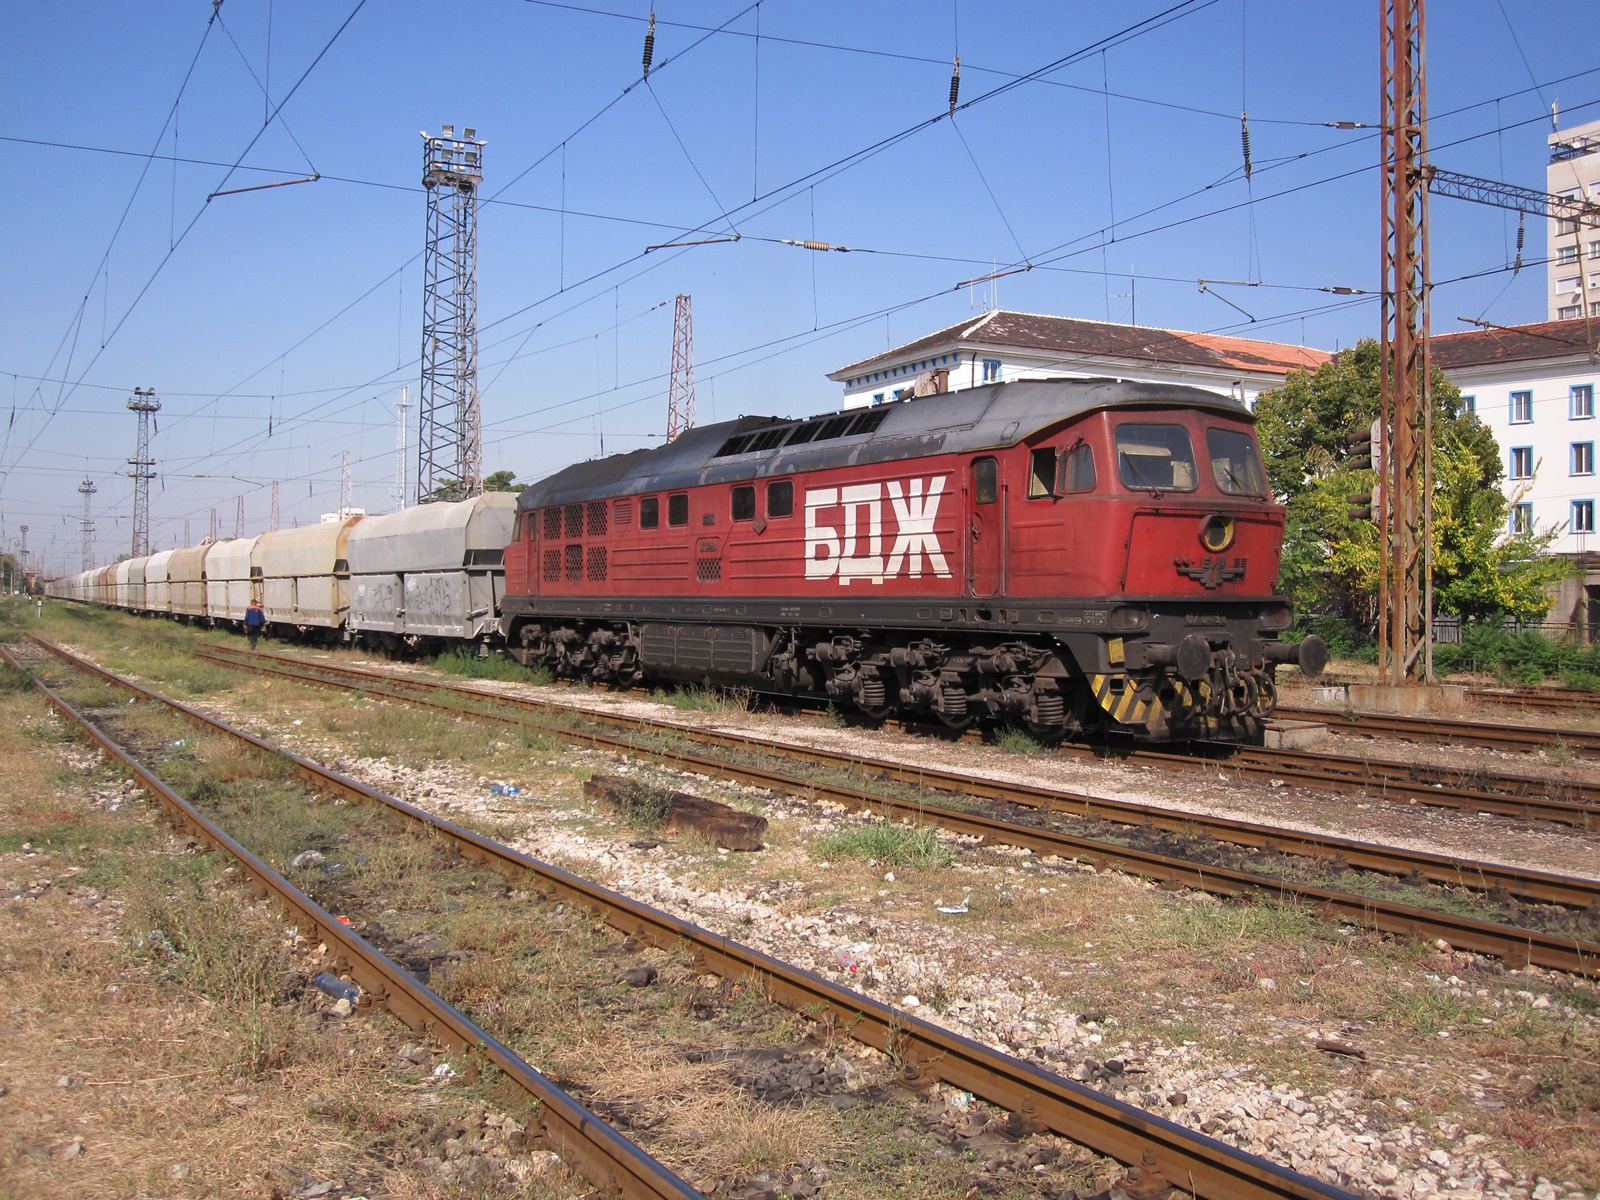 Bulgáriában számos szovjet eredetű Ludmilla dízelmozdony dolgozik a mai napig (kép forrása: Wikipedia)